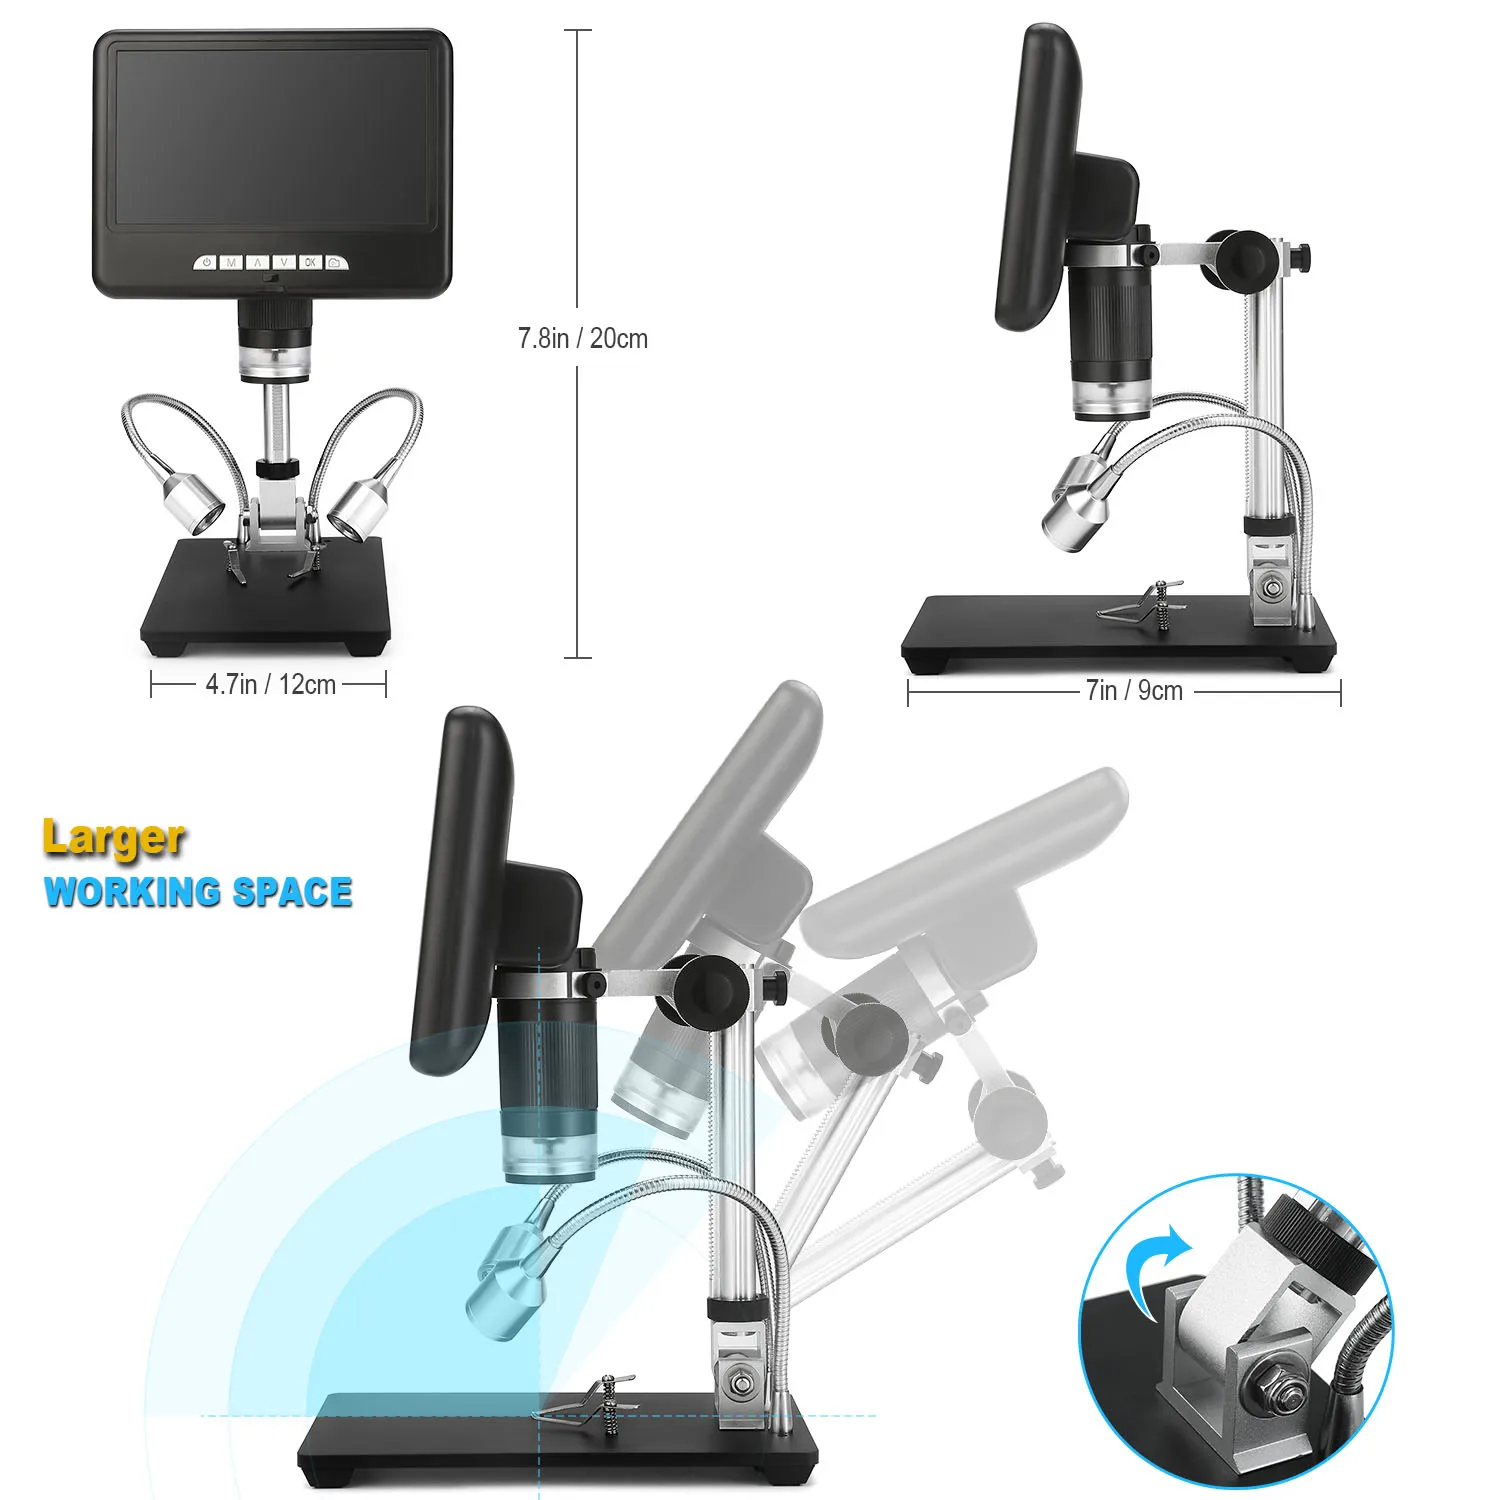 Andonstar-microscopio Digital de larga distancia, herramienta de soldadura para reparación de teléfono/PCB/SMD con imagen giratoria, 3D, AD207